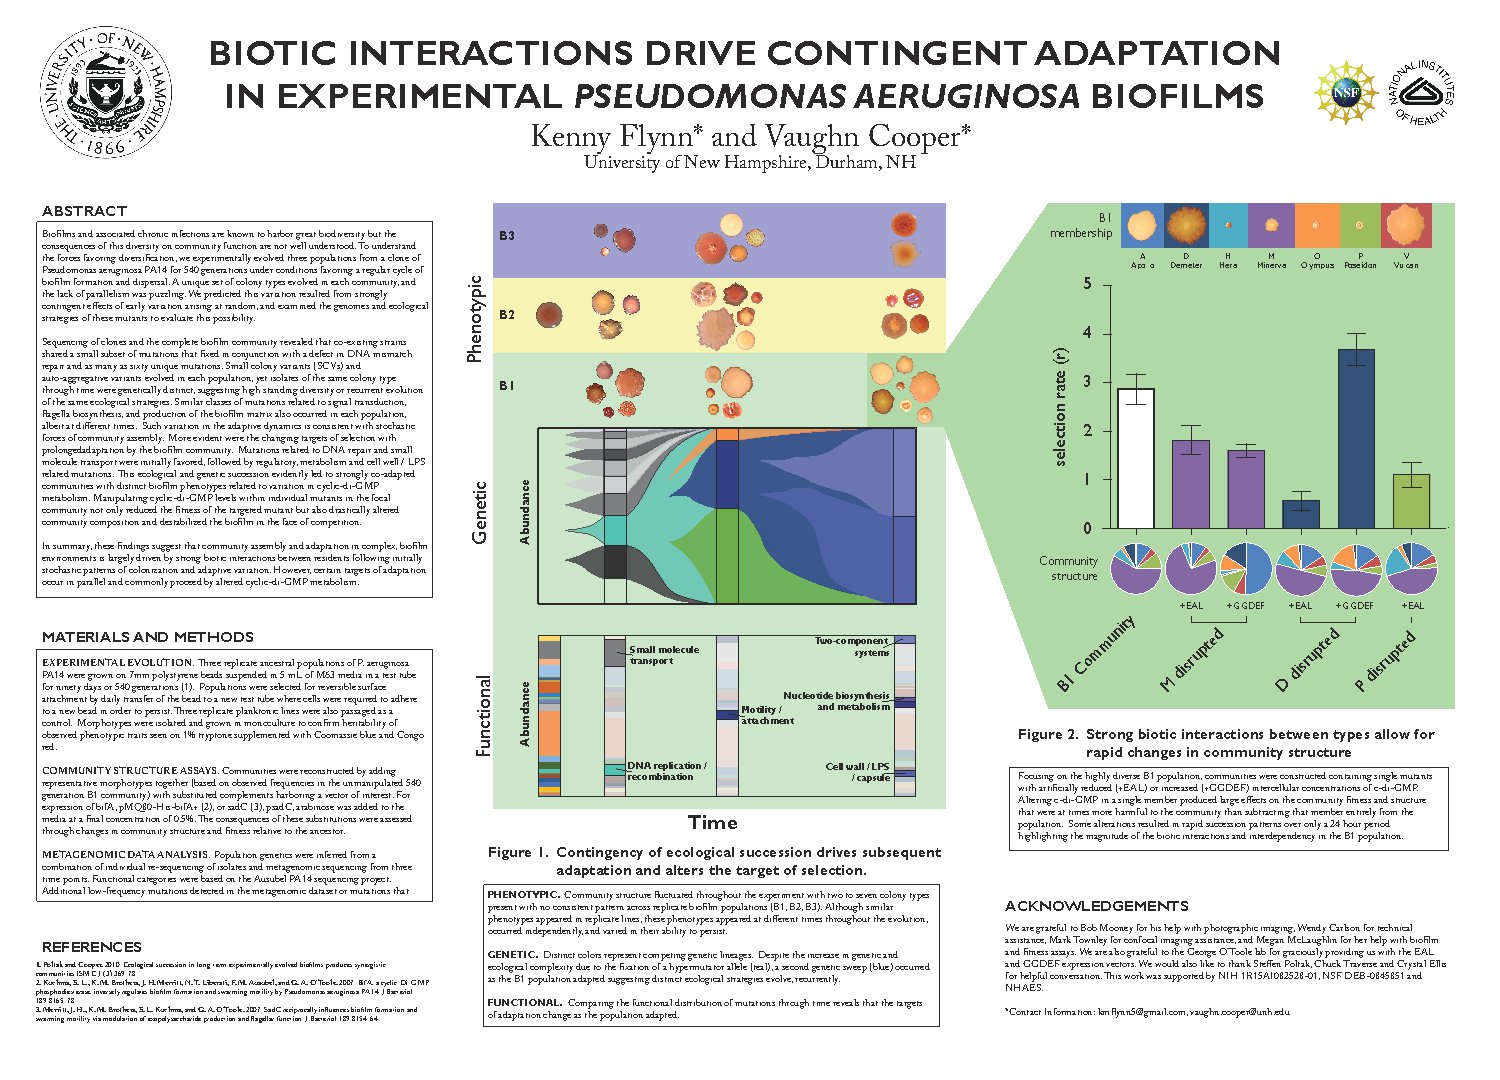 Biotic Interactions Drive Adaptation Asm 2013 by kmflynn5